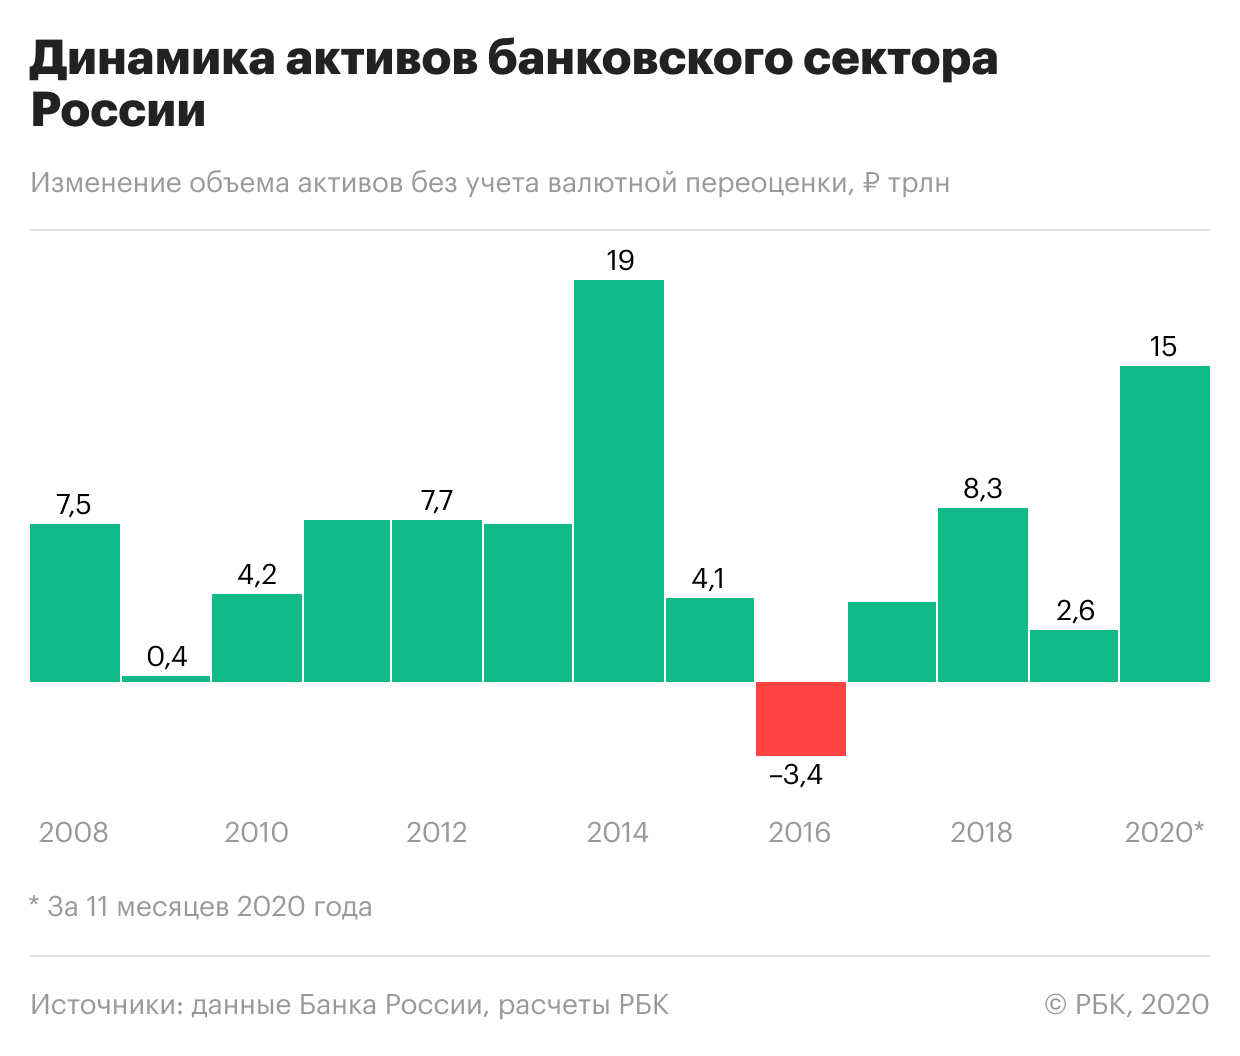 Российские банки показали рекордный рост активов за шесть лет